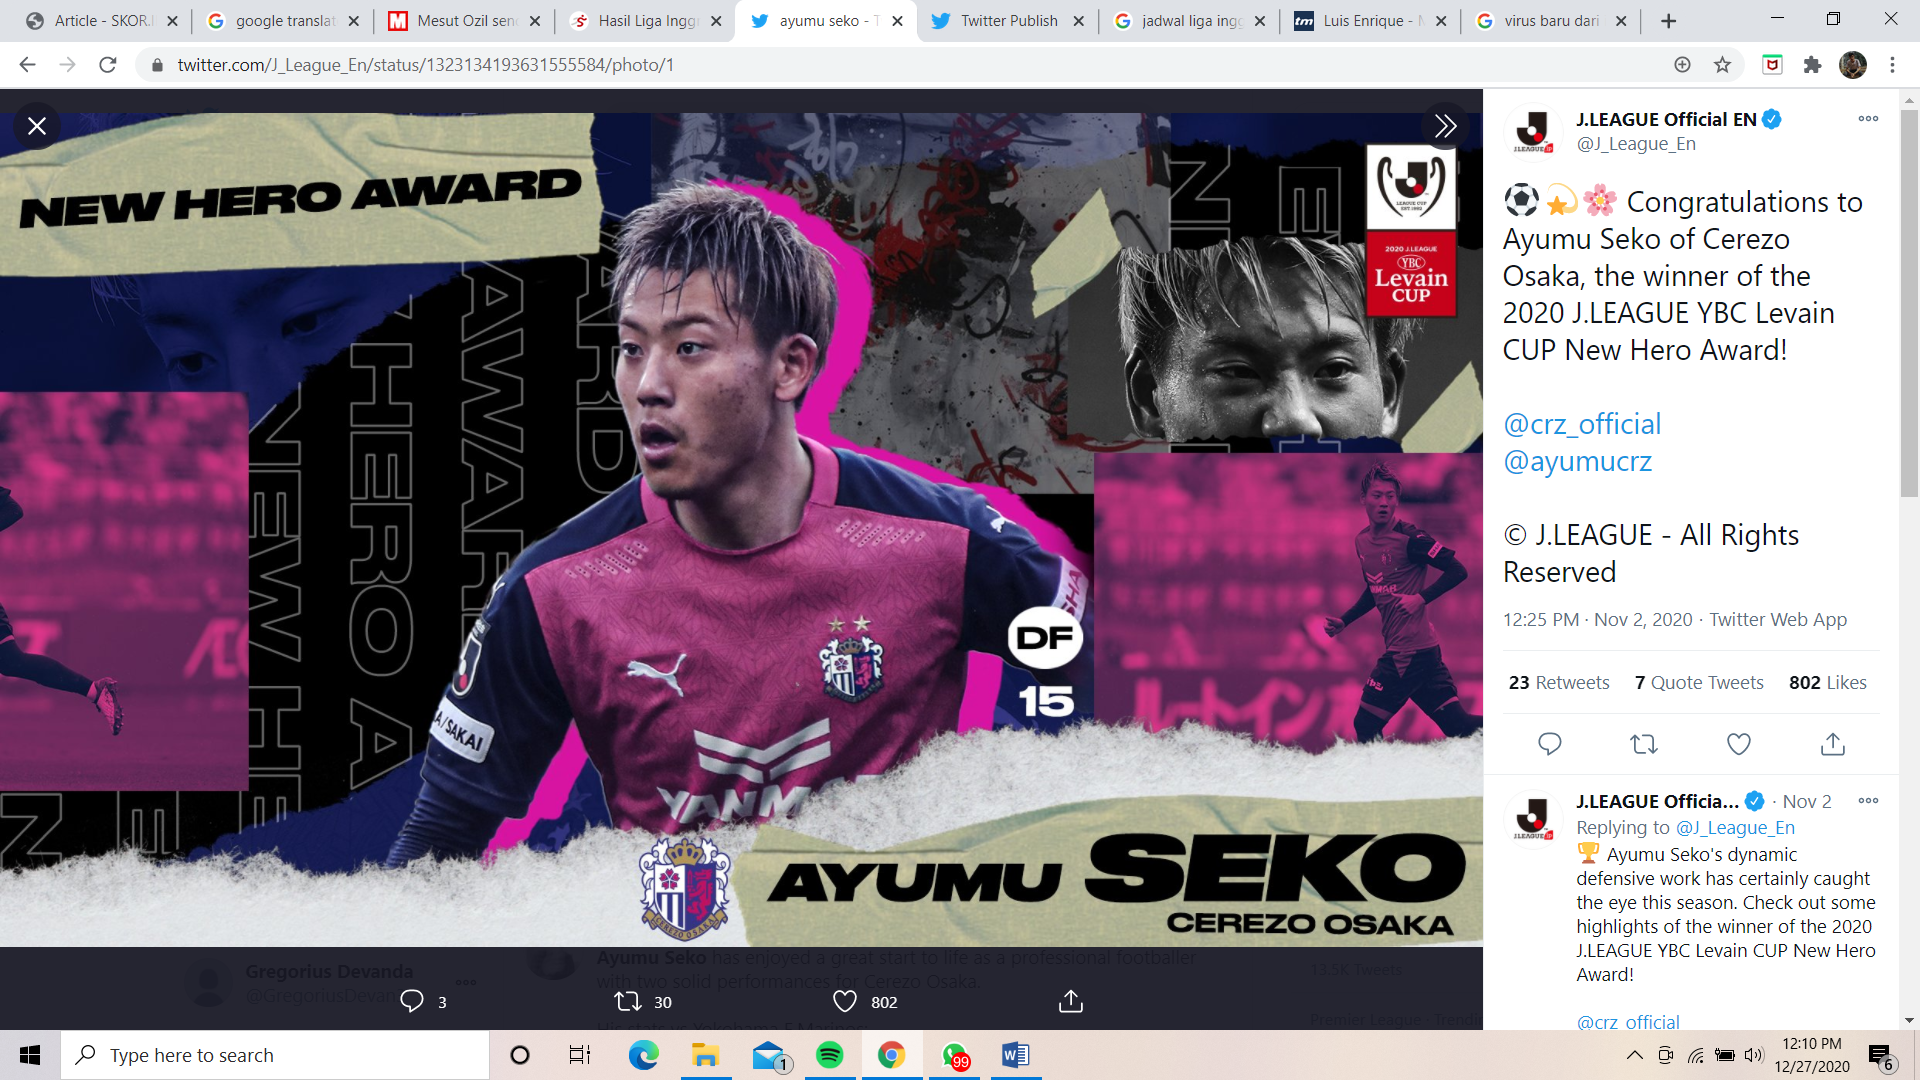 Mengenal Ayumu Seko, Pemain Muda Terbaik J.League 2020